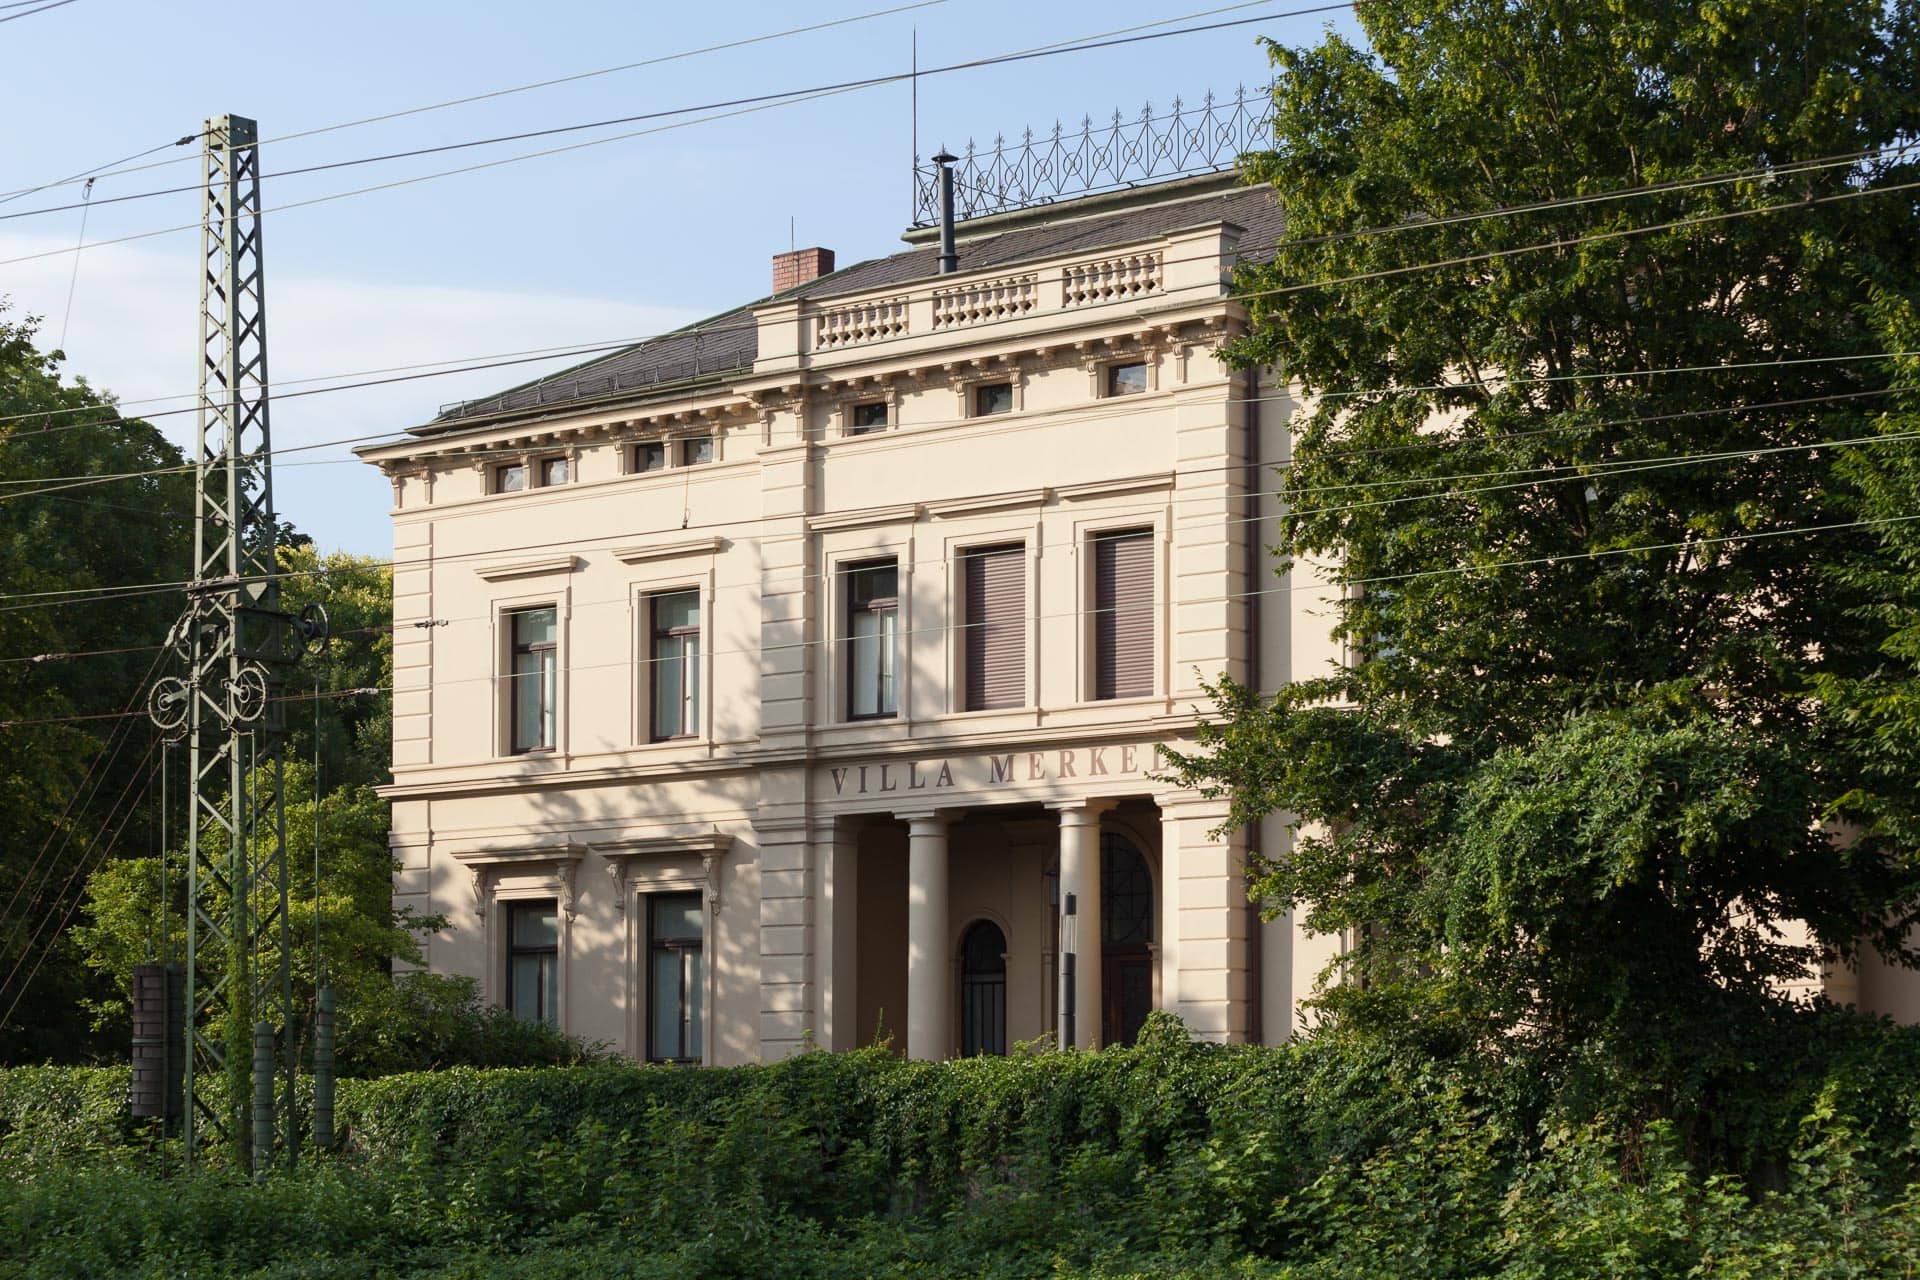 Villa Merkel Esslingen